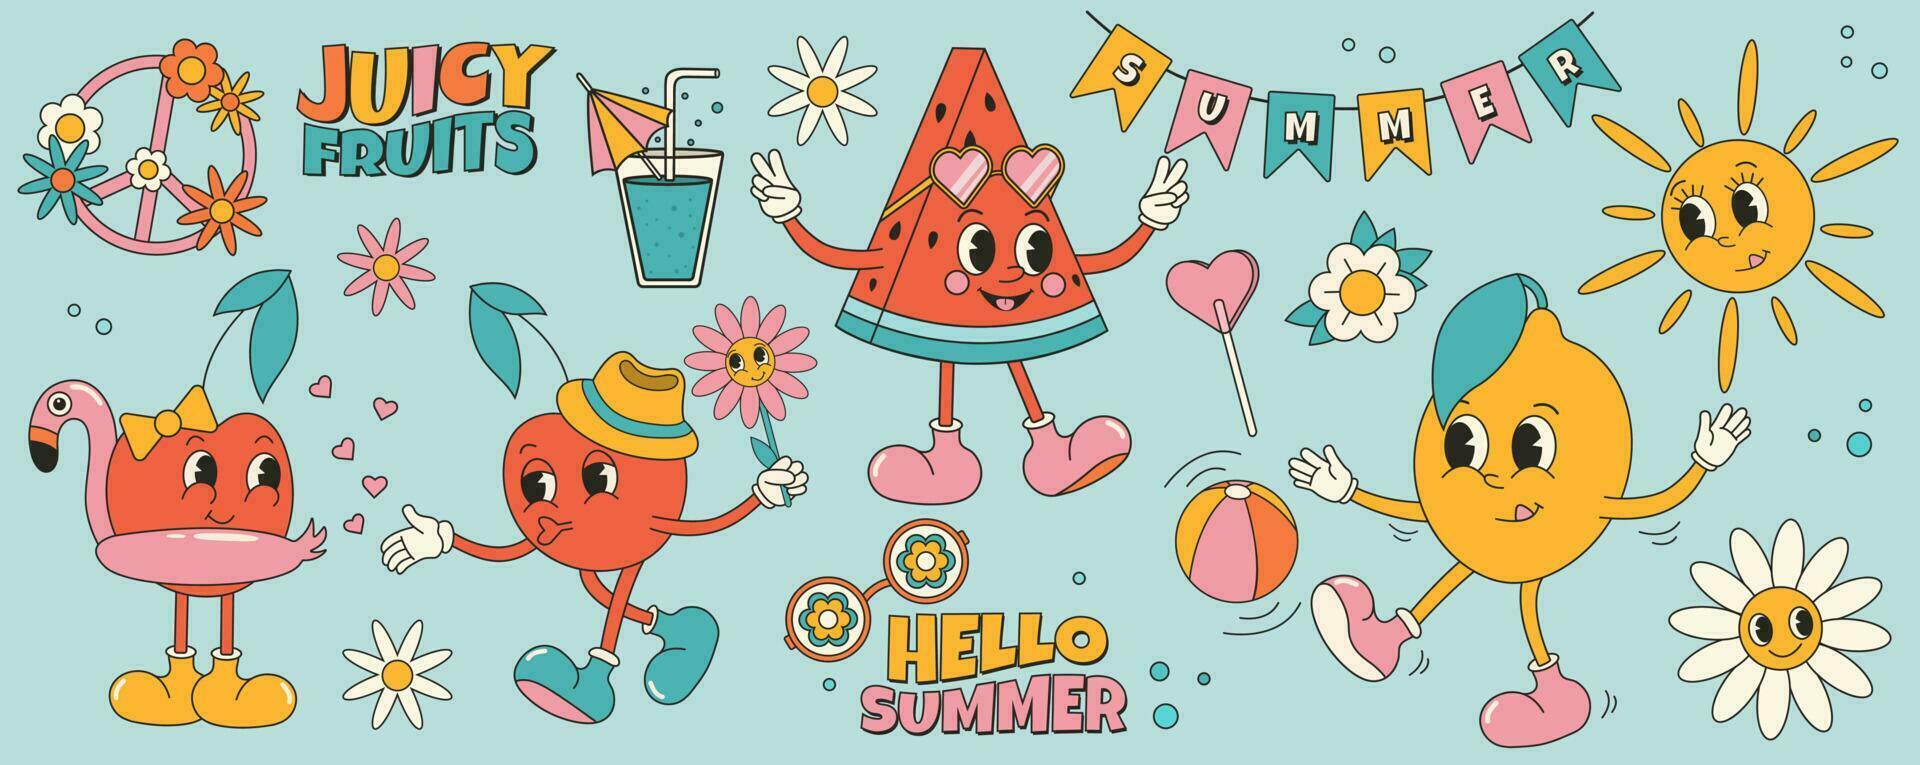 maravilloso verano pegatina conjunto con verano frutas y elementos. dibujos animados caracteres en de moda retro estilo, cómic mascota caracteres. vector